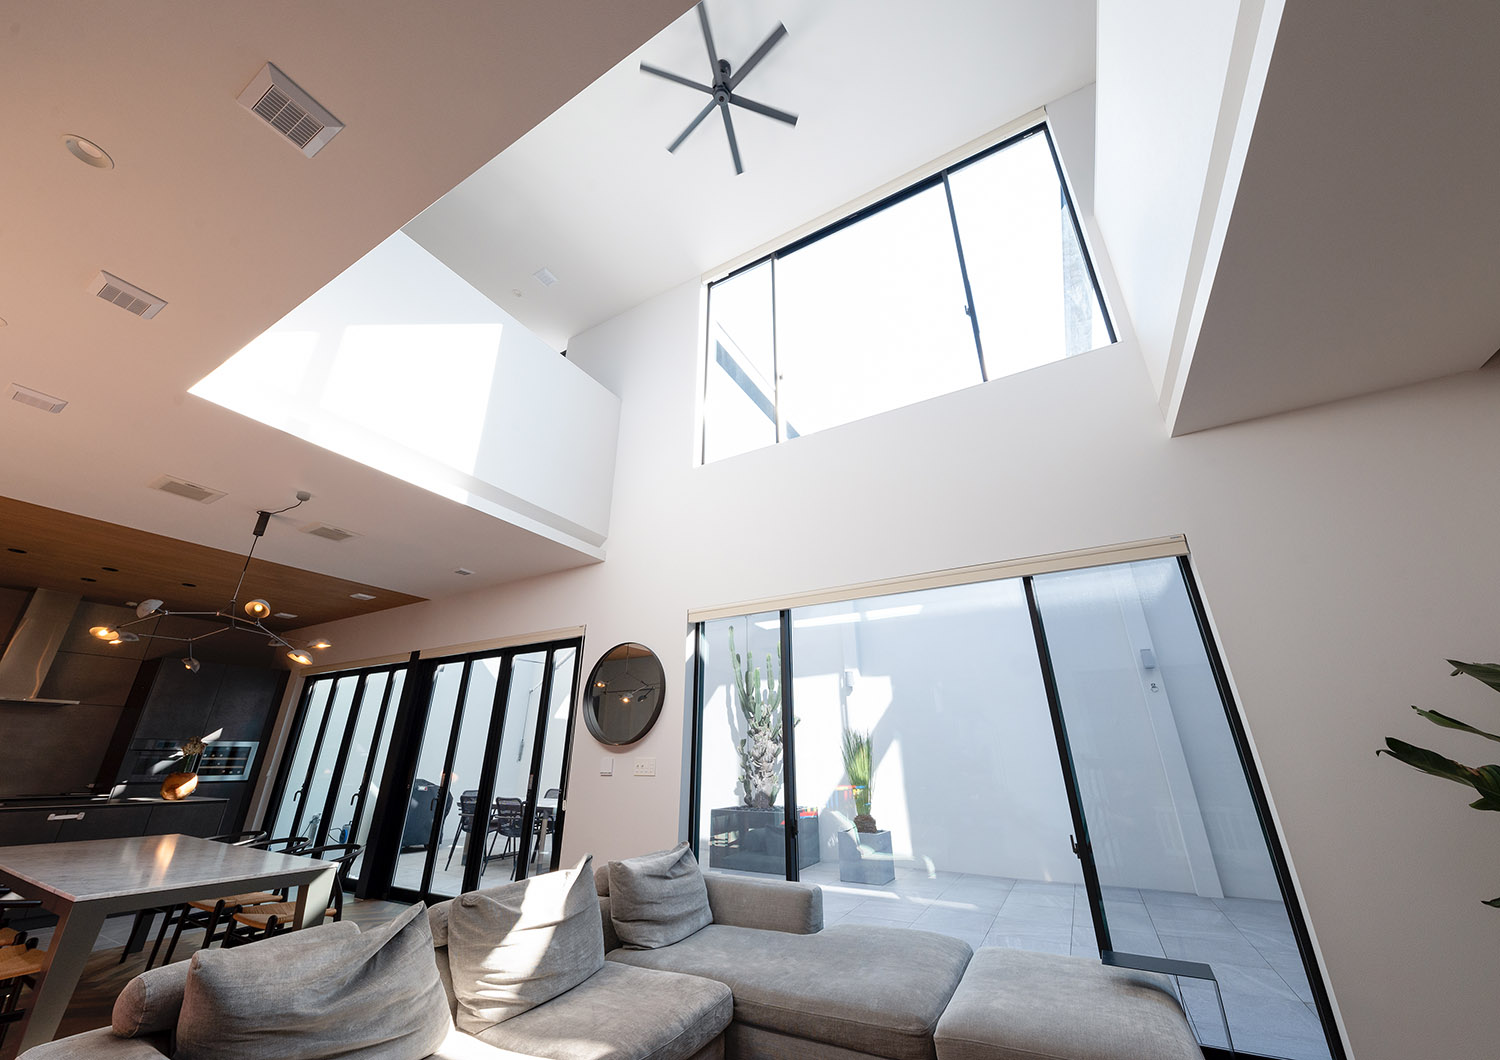 天井にシーリングファンが取り付けられた吹き抜けの開放感があるLDK・デザイン住宅